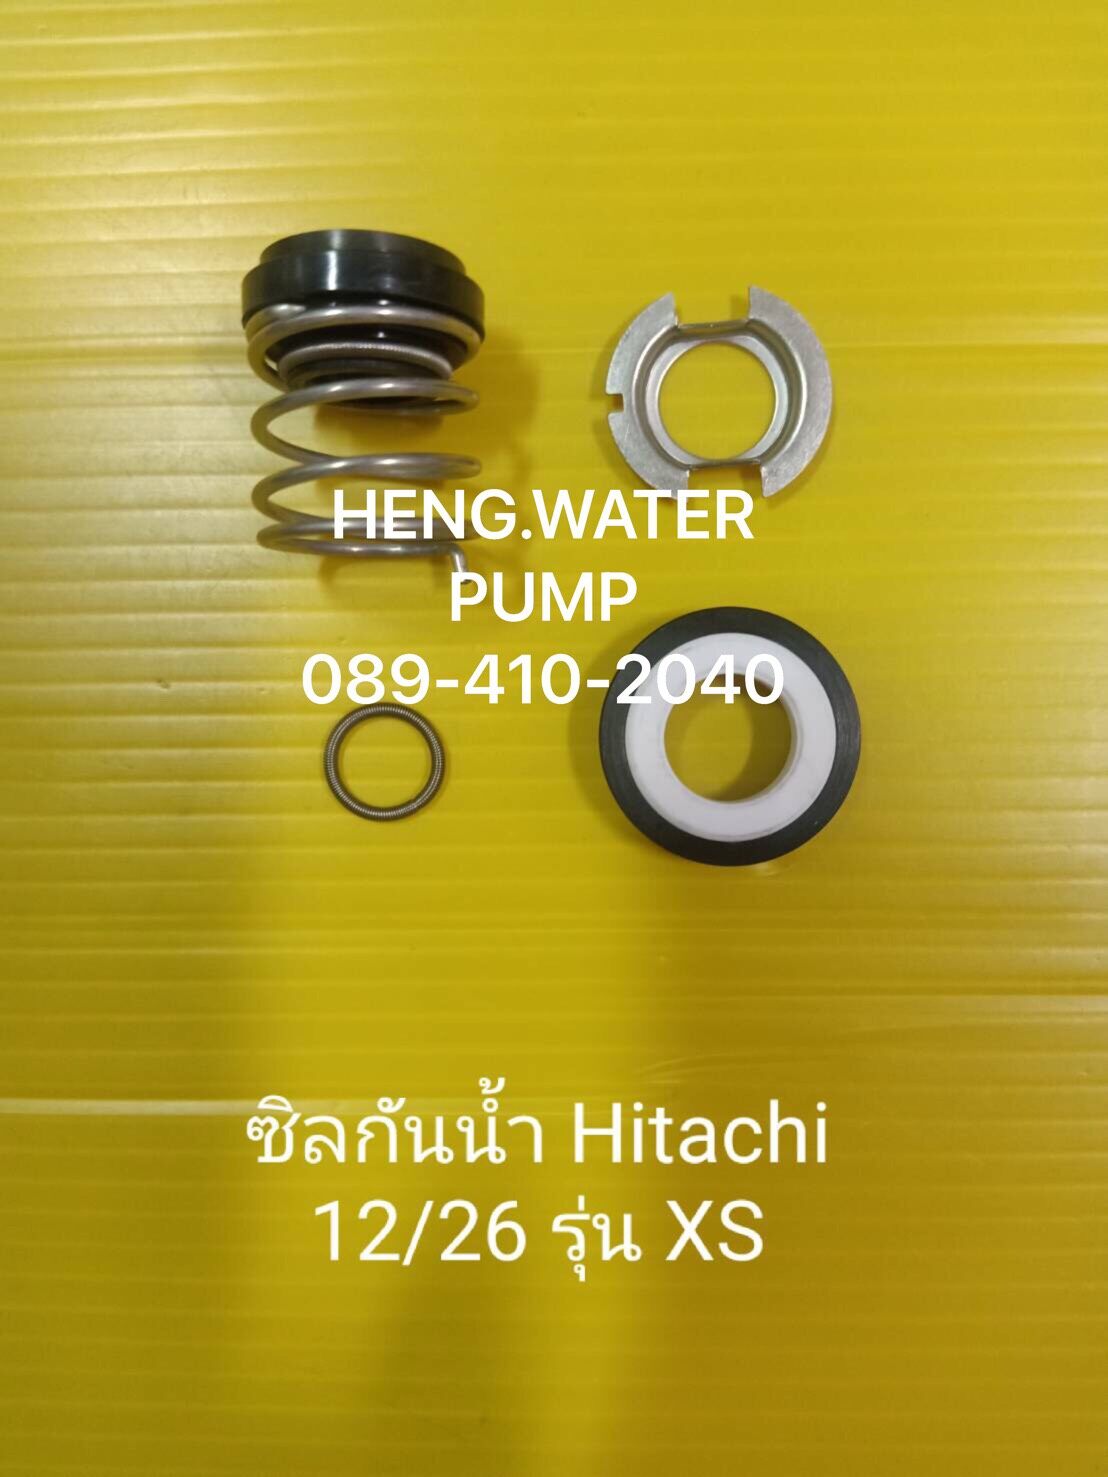 แมคคานิคอลซีล ซีลกันน้ำ ฮิตาชิ 12/26 Hitachi อะไหล่ ปั้มน้ำ ปั๊มน้ำ water pump อุปกรณ์เสริม อะไหล่ปั๊มน้ำ อะไหล่ปั้มน้ำ